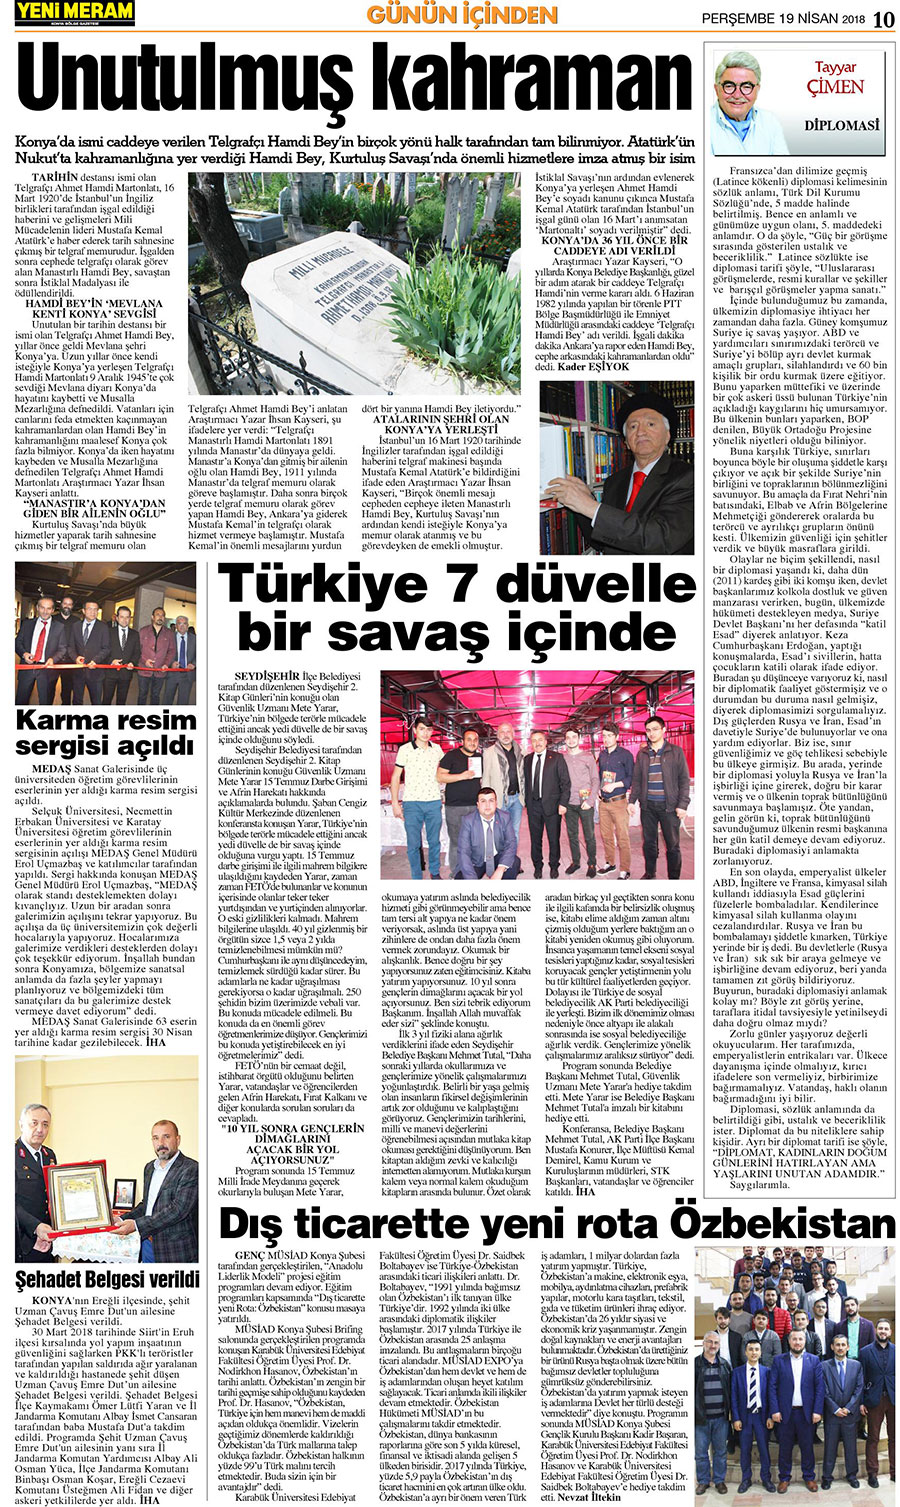 19 Nisan 2018 Yeni Meram Gazetesi